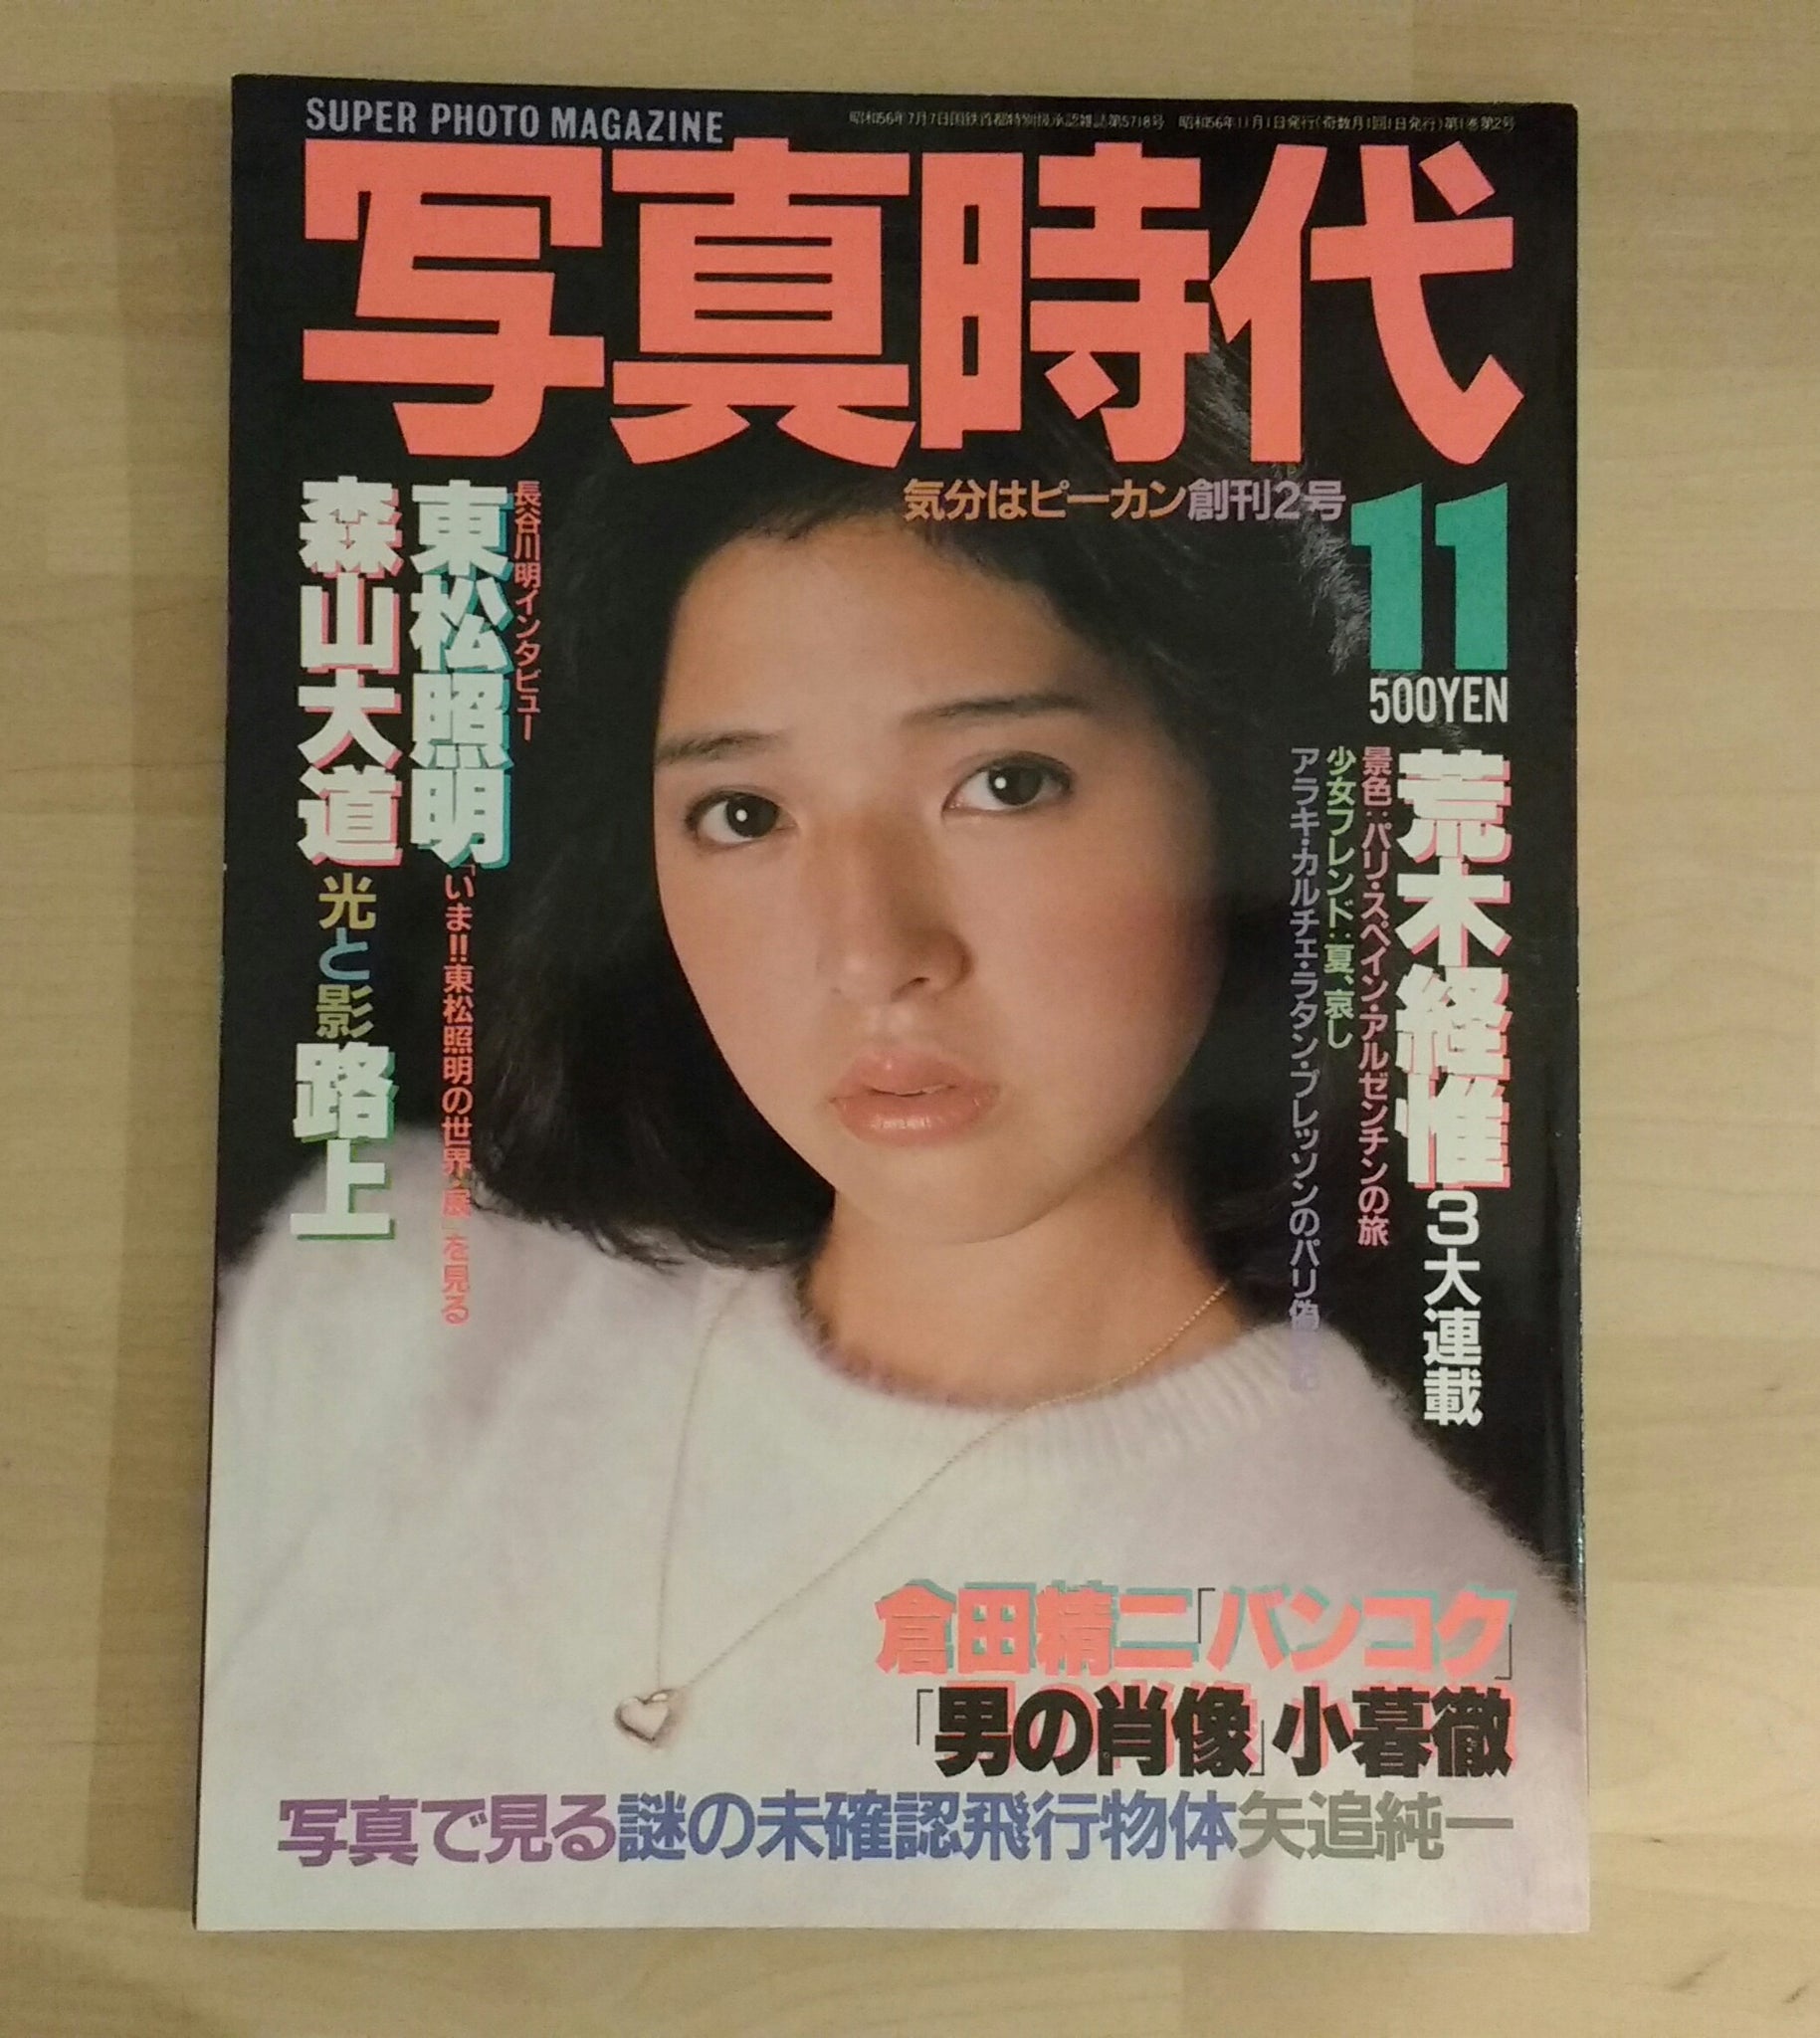 Shashin Jidai 11/81 | Nobuyoshi Araki, Seiji Kurata, Daido Moriyama, et. al. | Byakuya Shobo, 1981